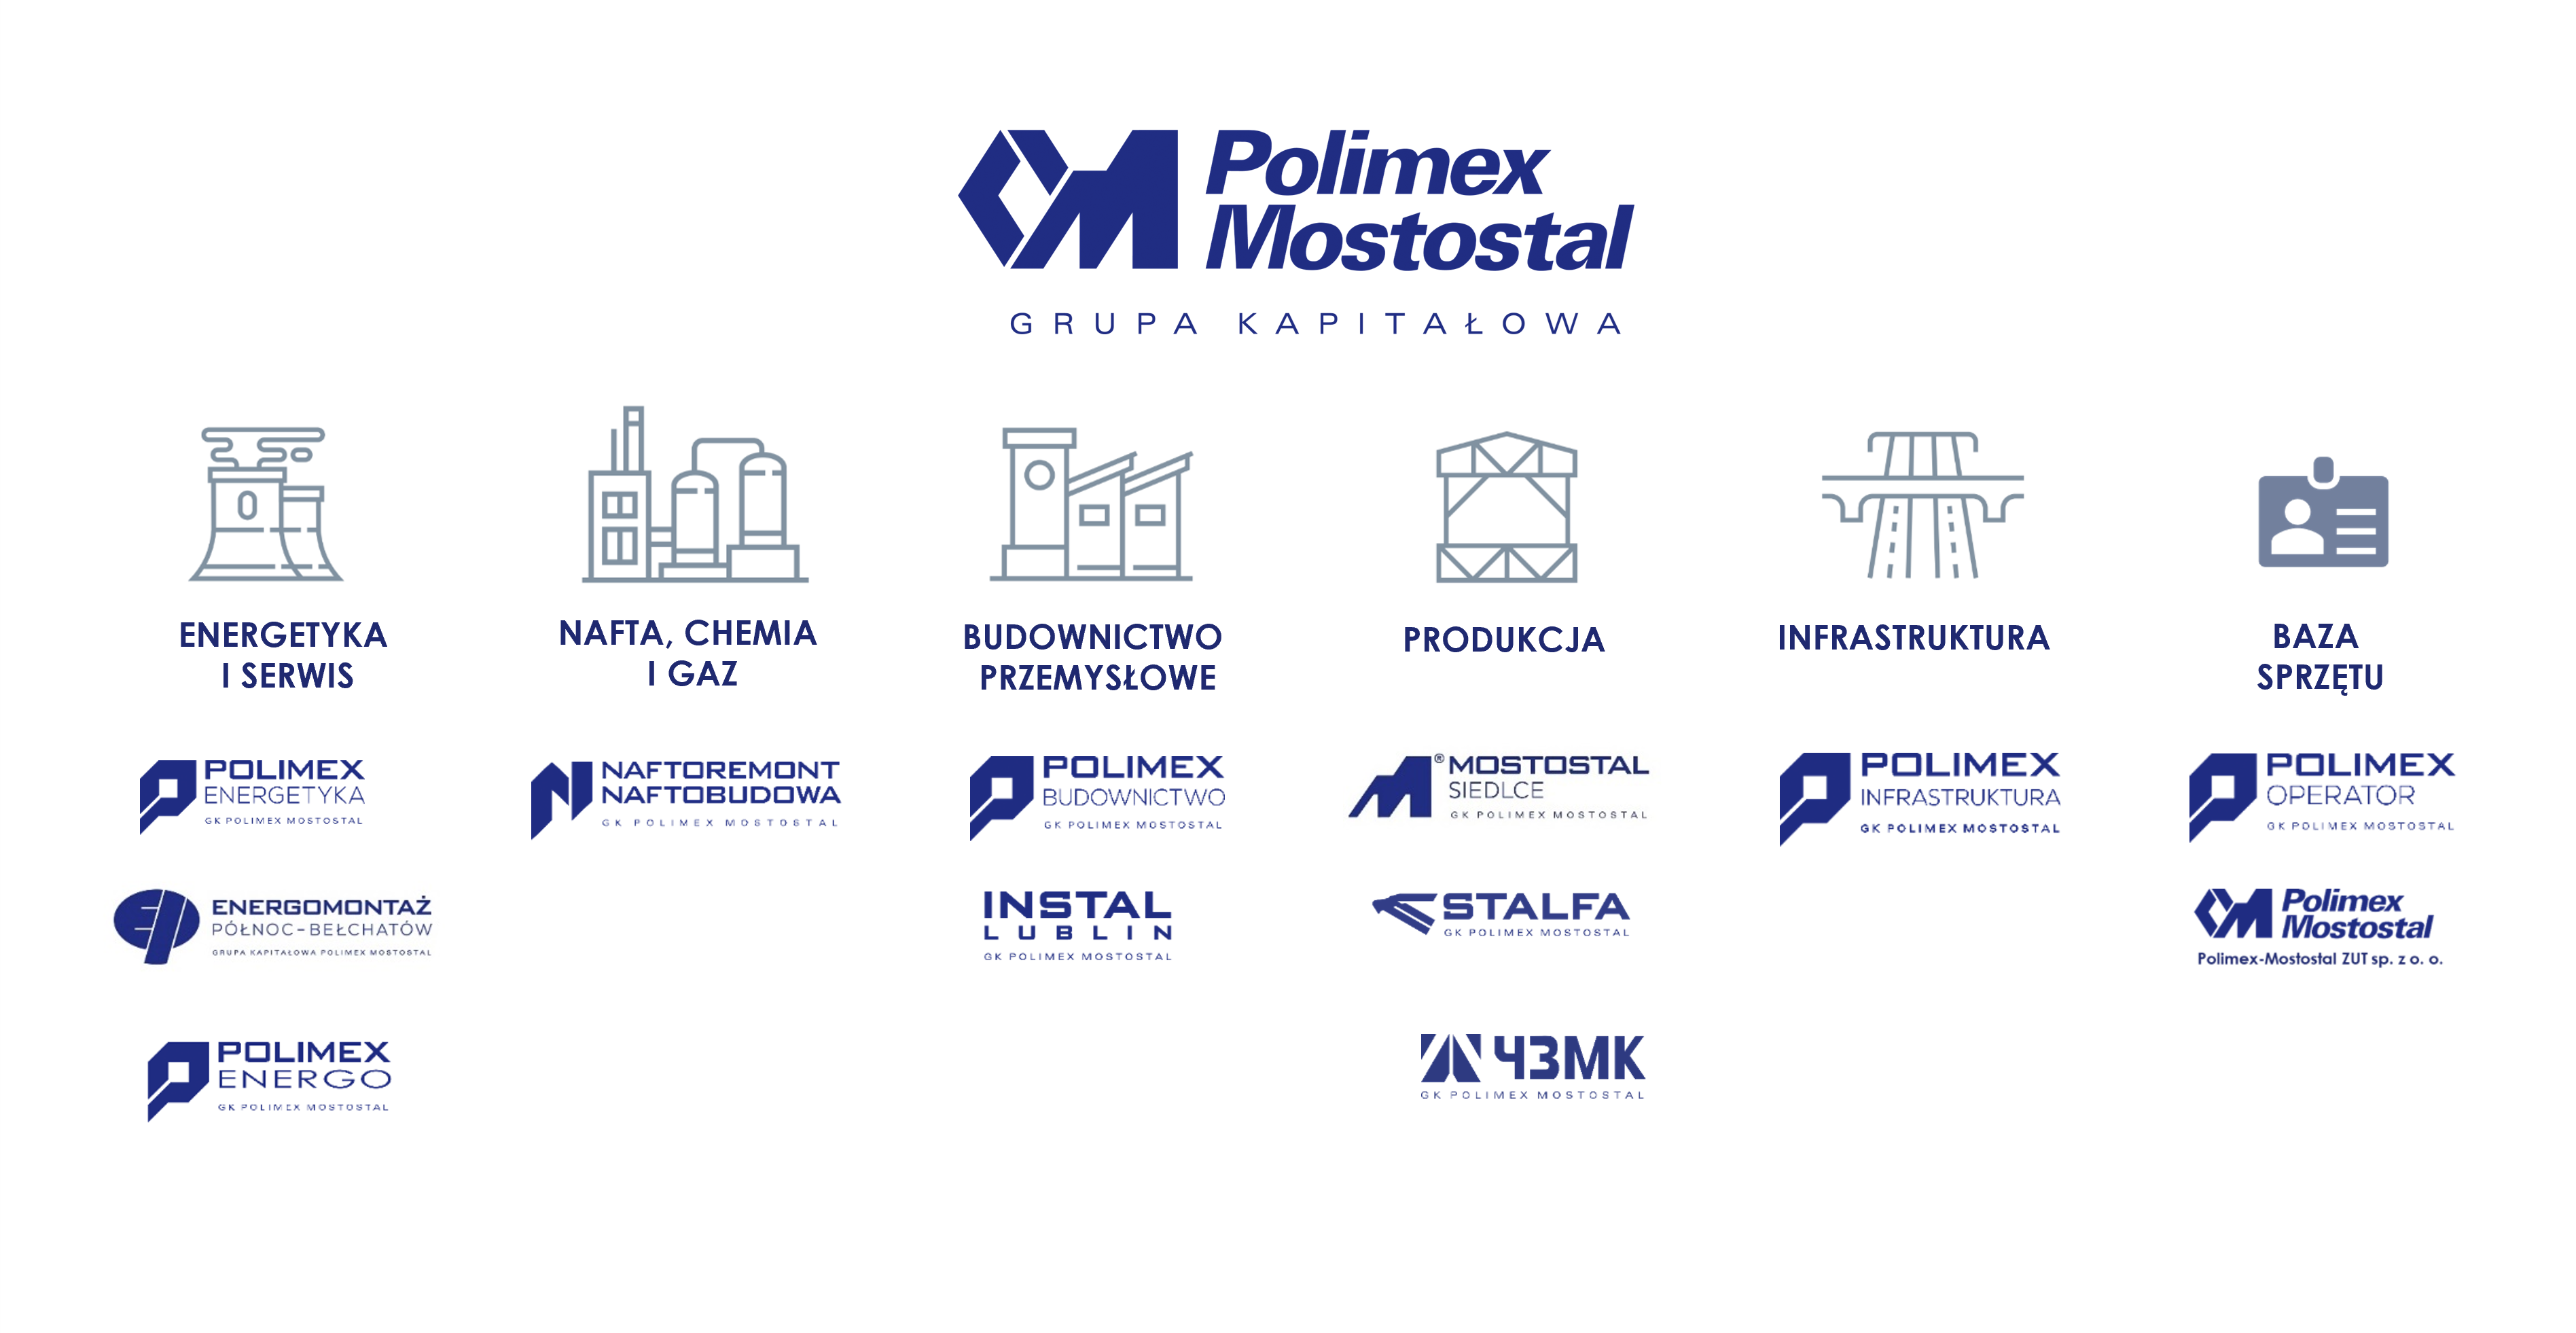 Struktura Grupy Kapitałowej Polimex Mostostal